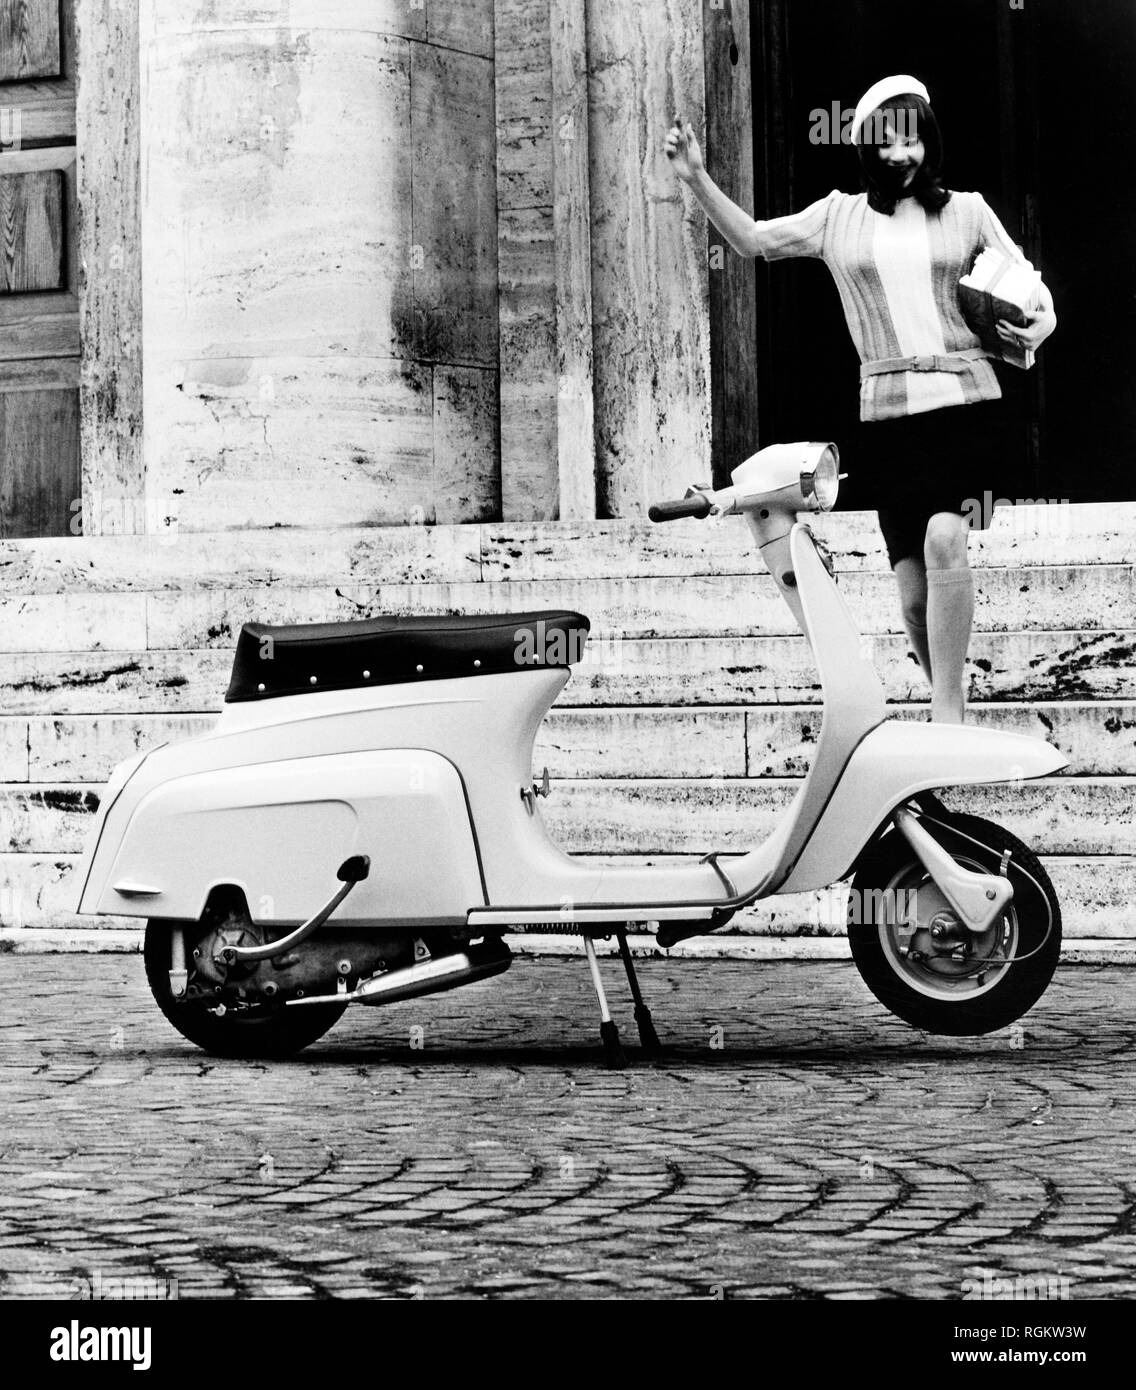 Lambretta, Italia, 1967 Foto de stock